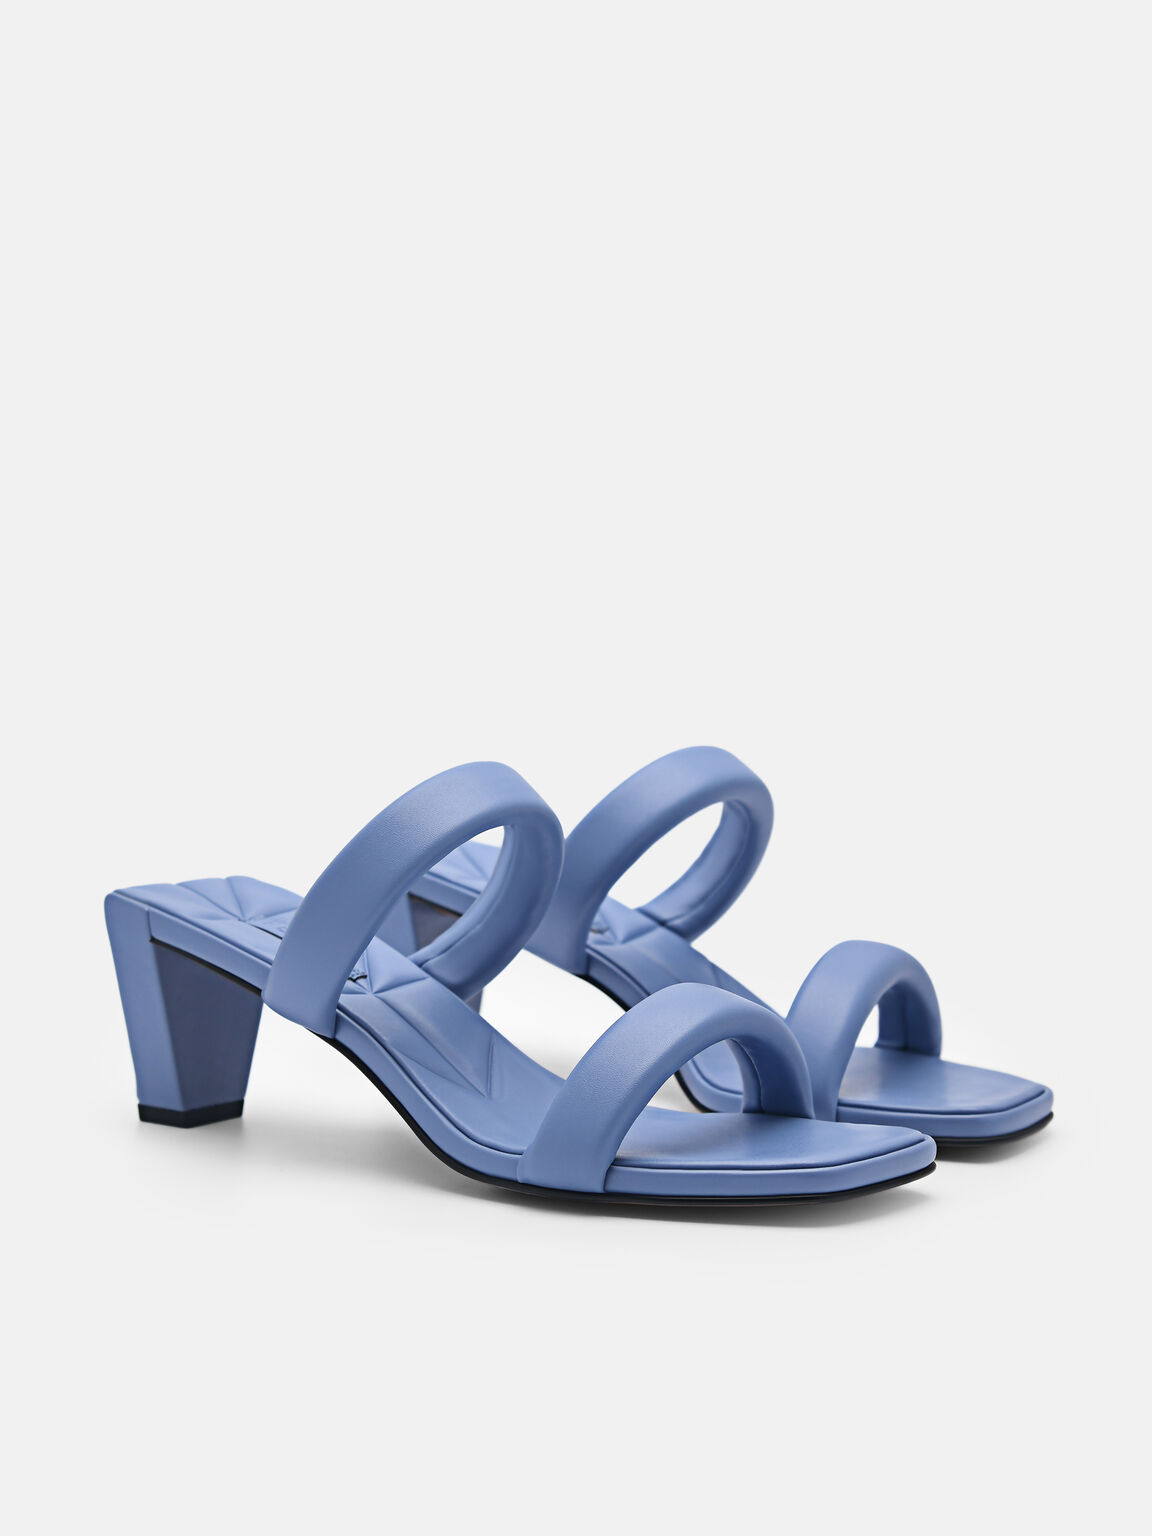 Aster Heel Sandals, Blue, hi-res